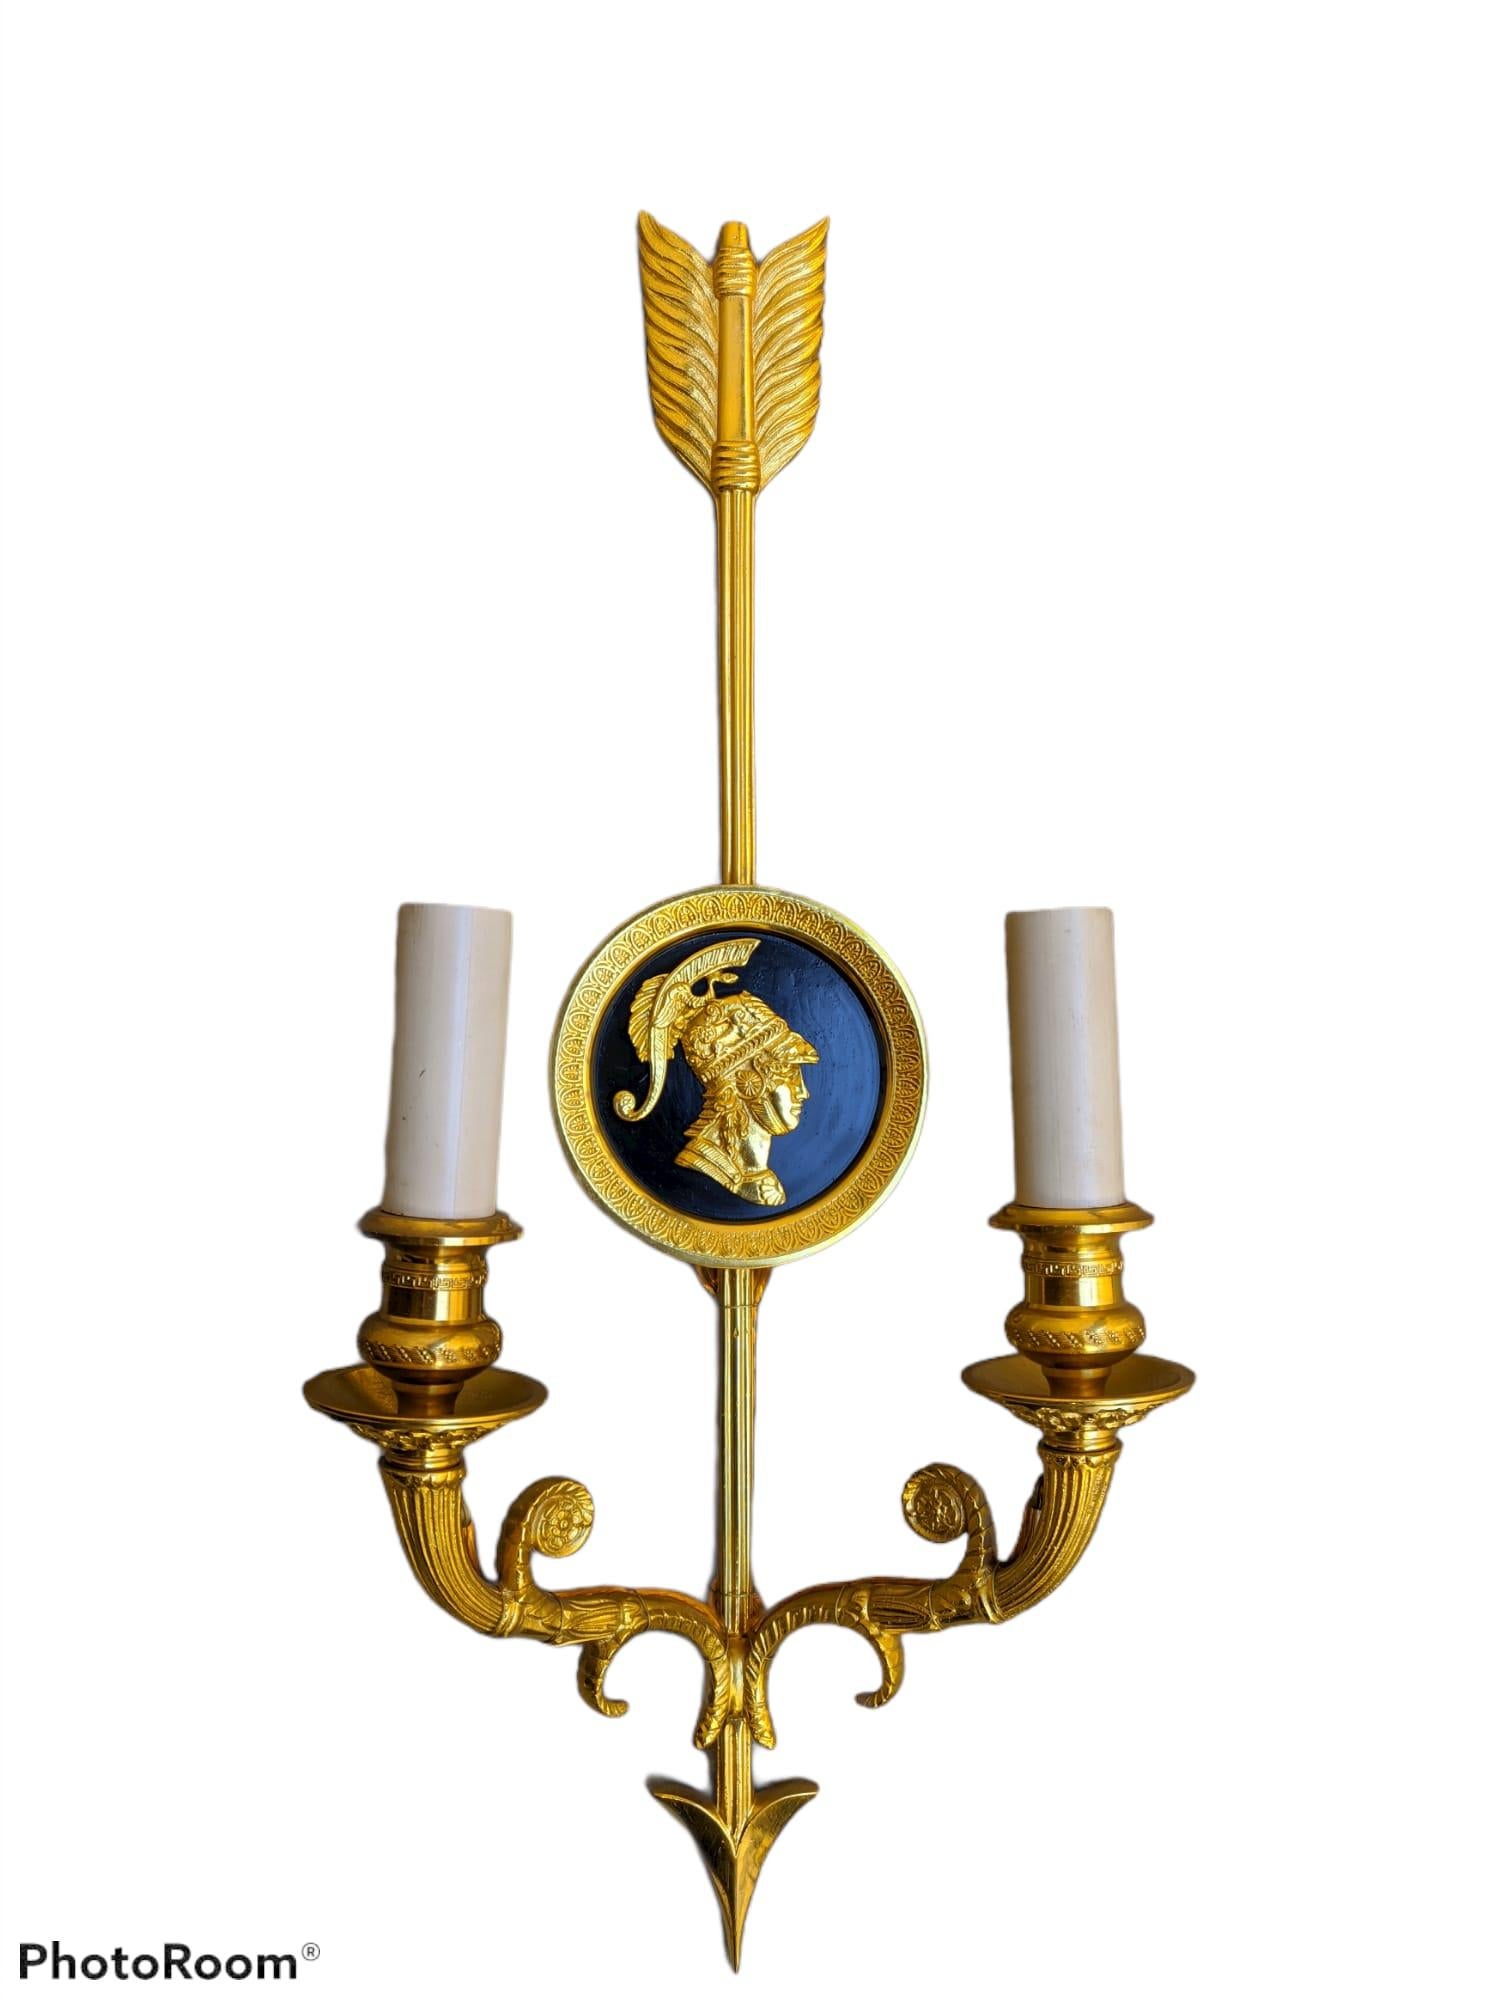 Cette applique murale de style Empire français en bronze doré de Gherardo Degli Albizzi présente des détails ciselés à la main de la meilleure qualité.
La plaque arrière de cette applique présente une plaque ronde laquée et une flèche traversant du